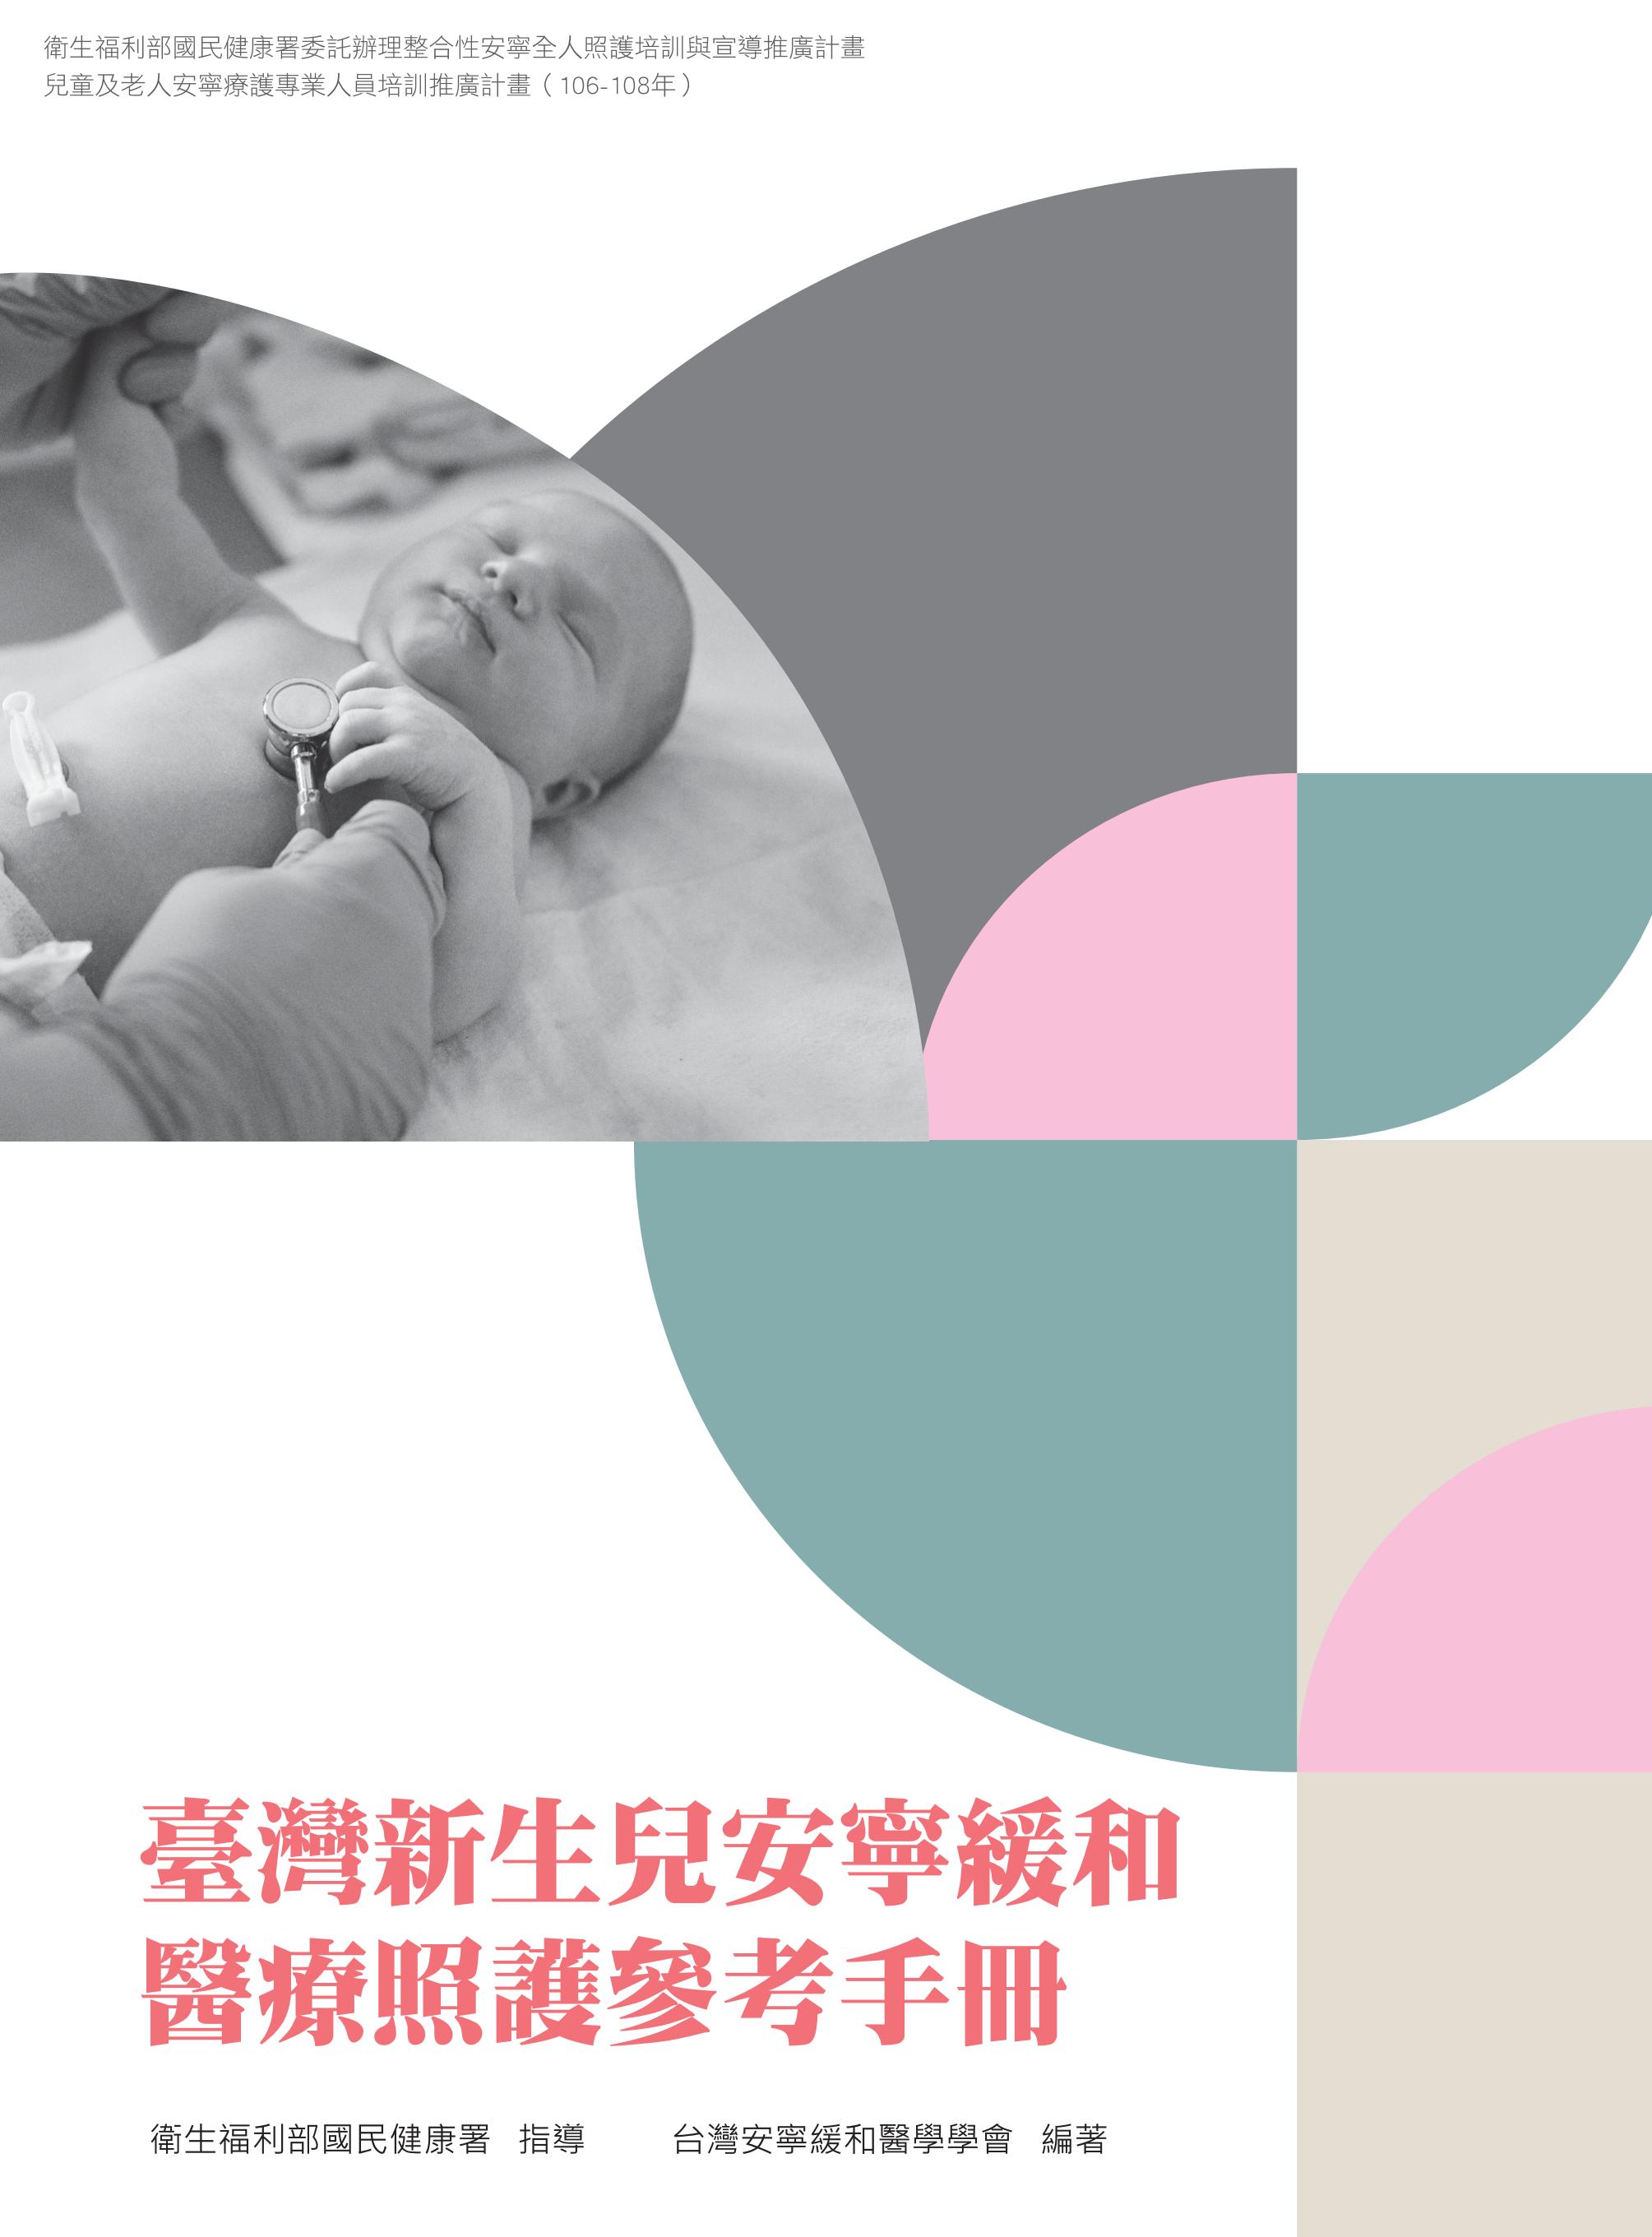 臺灣新生兒安寧緩和醫療照護參考手冊文章照片